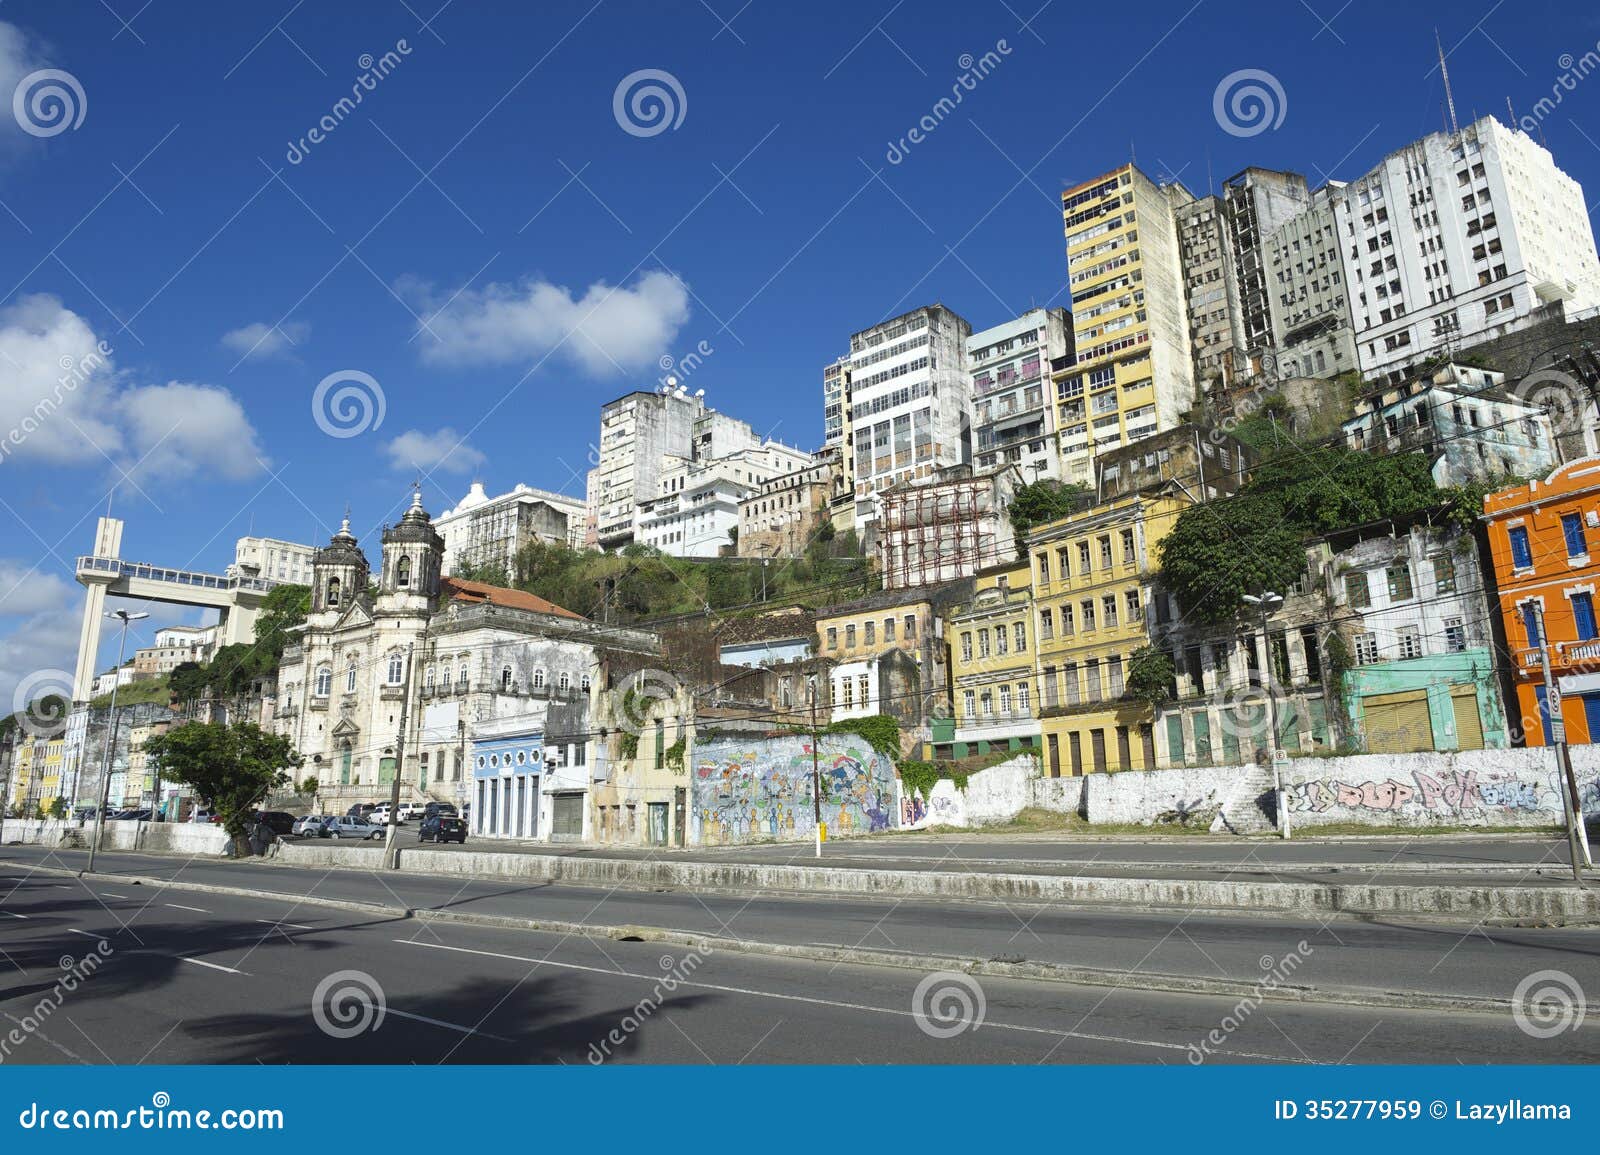 salvador brazil city skyline from cidade baixa